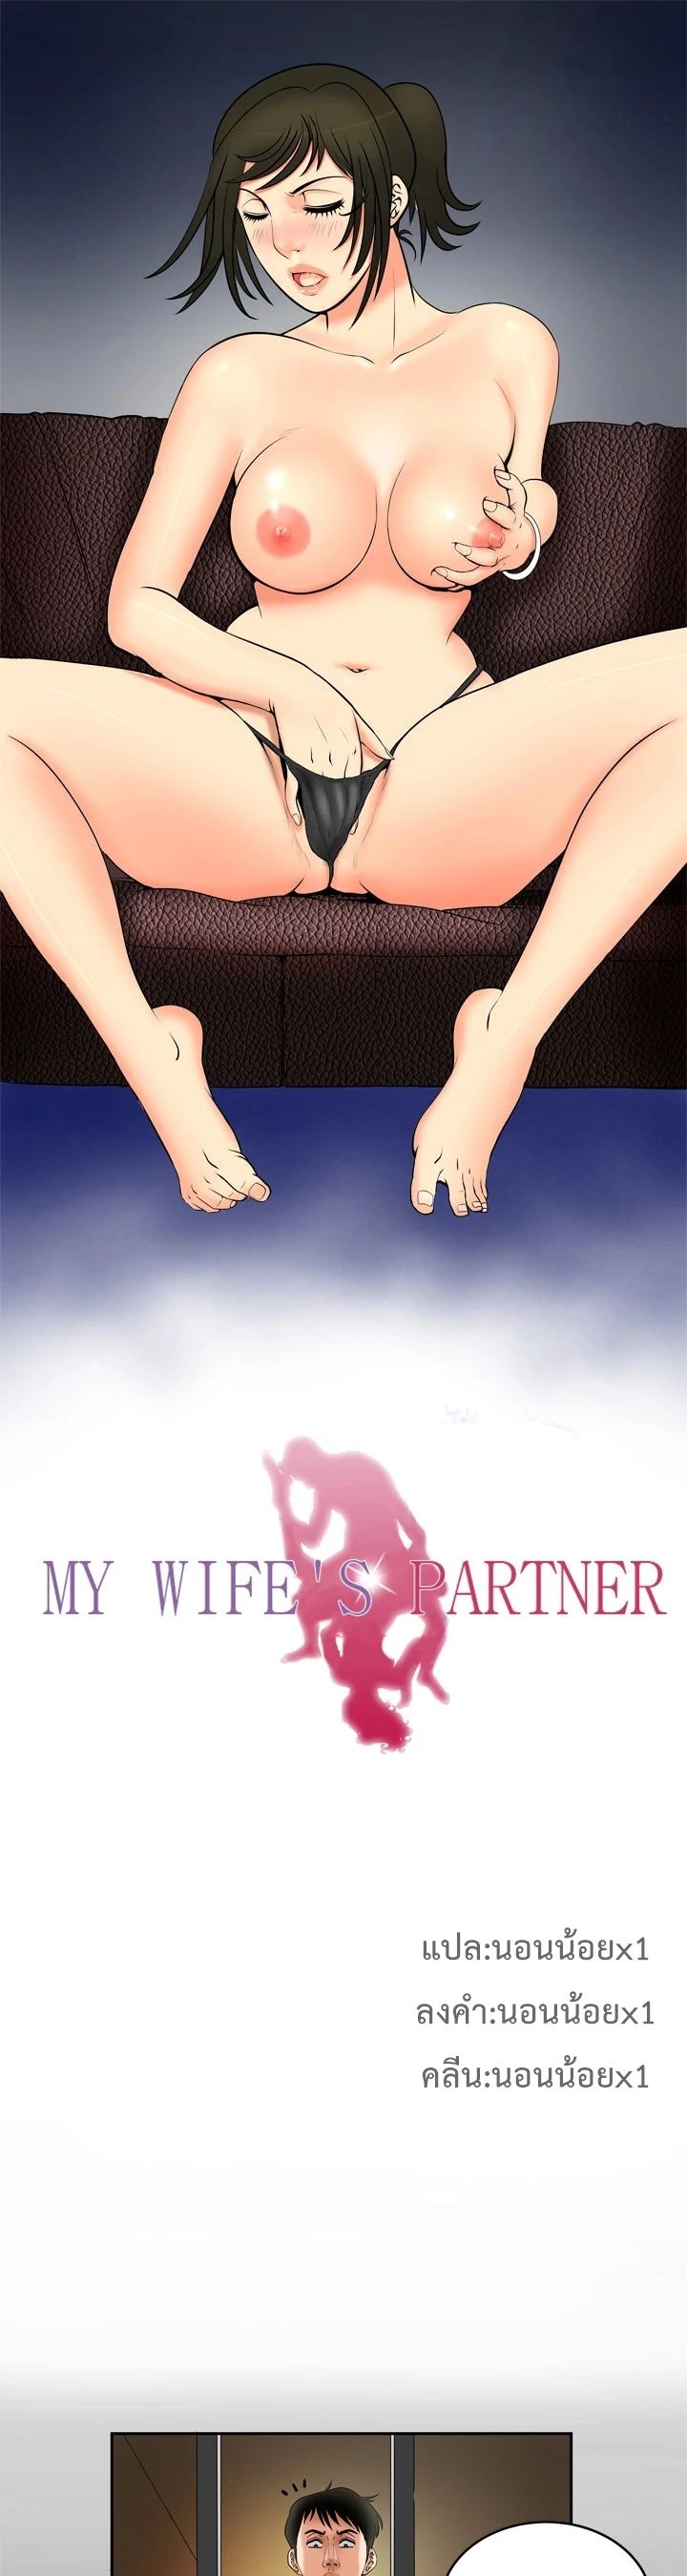 My Wife s Partner - หน้า 2